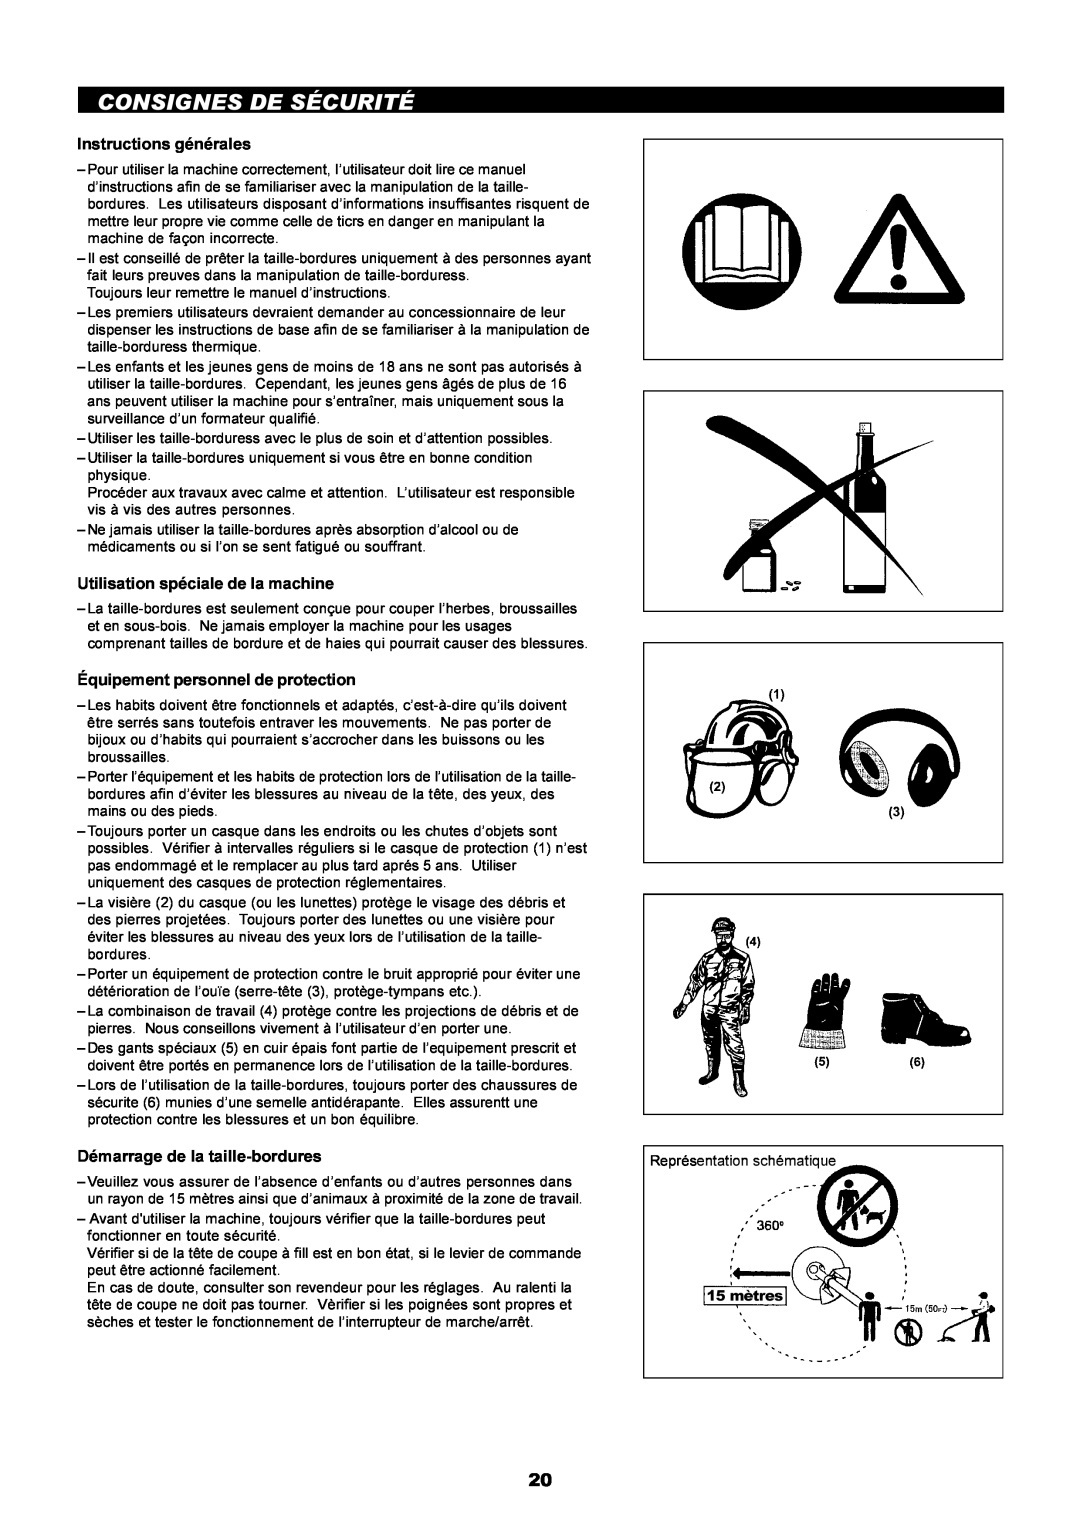 Makita LT-210 instruction manual Consignes De Sécurité, Instructions générales, Utilisation spéciale de la machine 